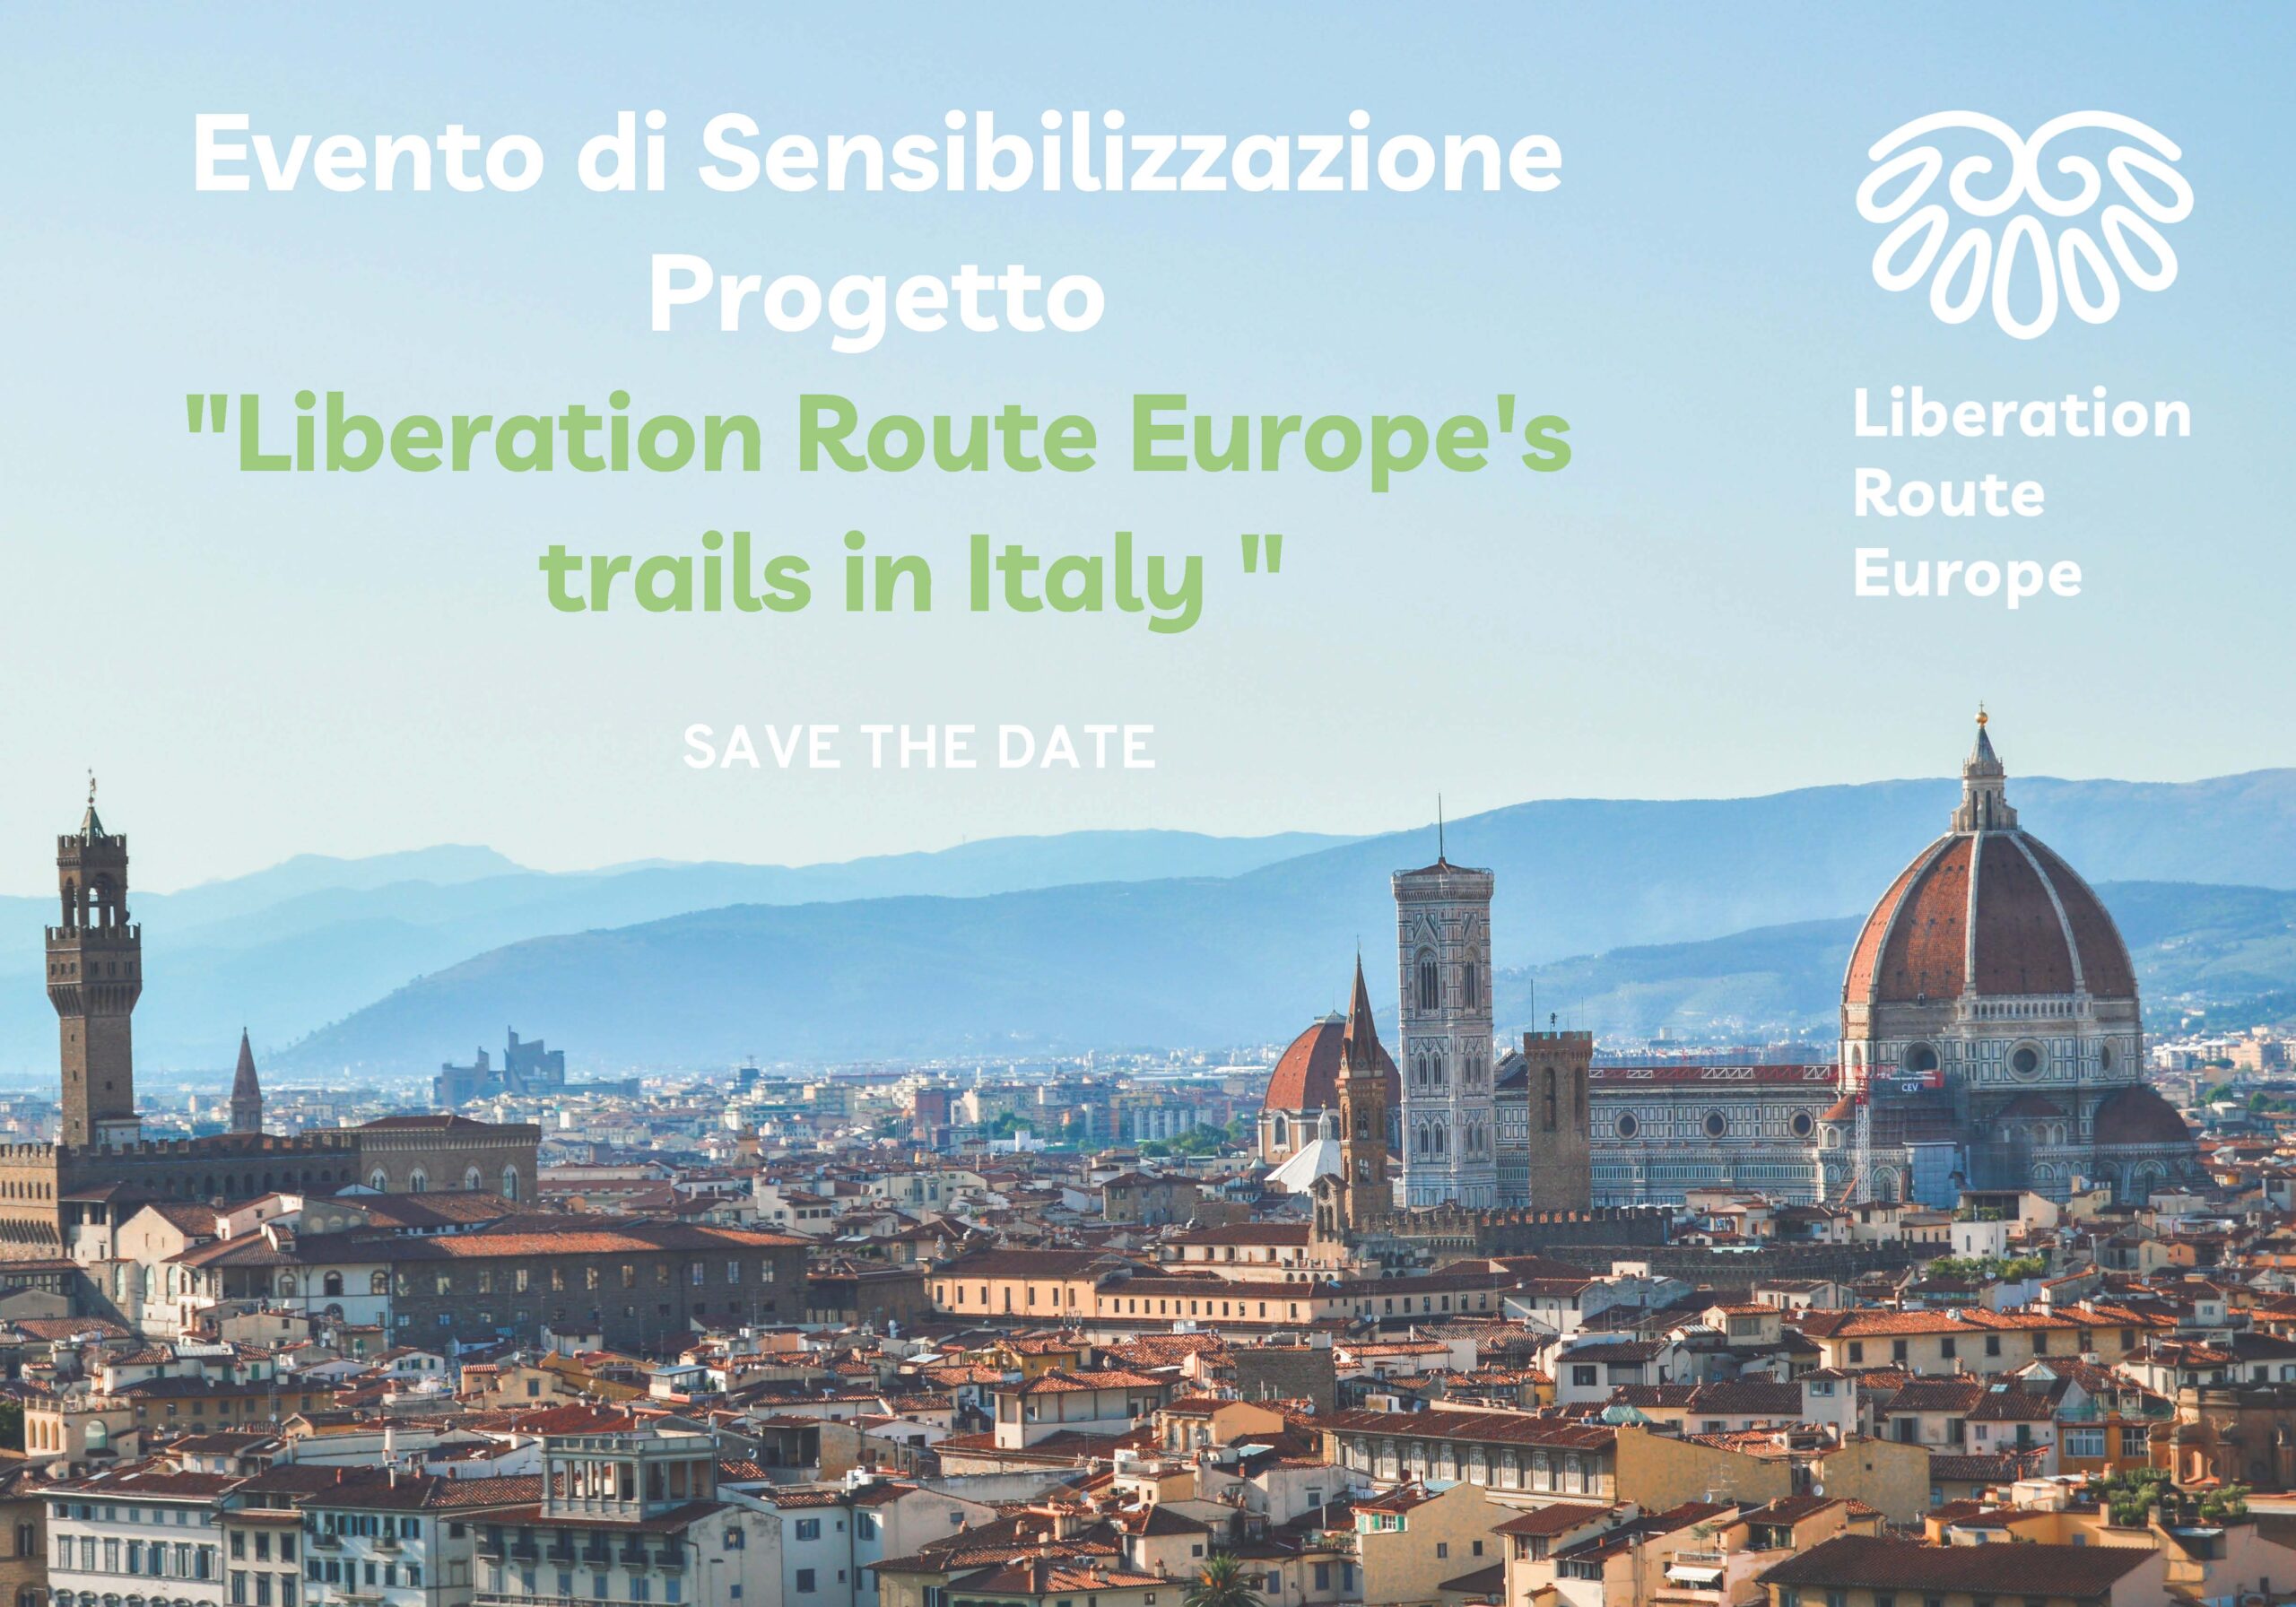 Evento di sensibilizzazione progetto “LIBERATION ROUTE EUROPE’S TRAILS IN ITALY”